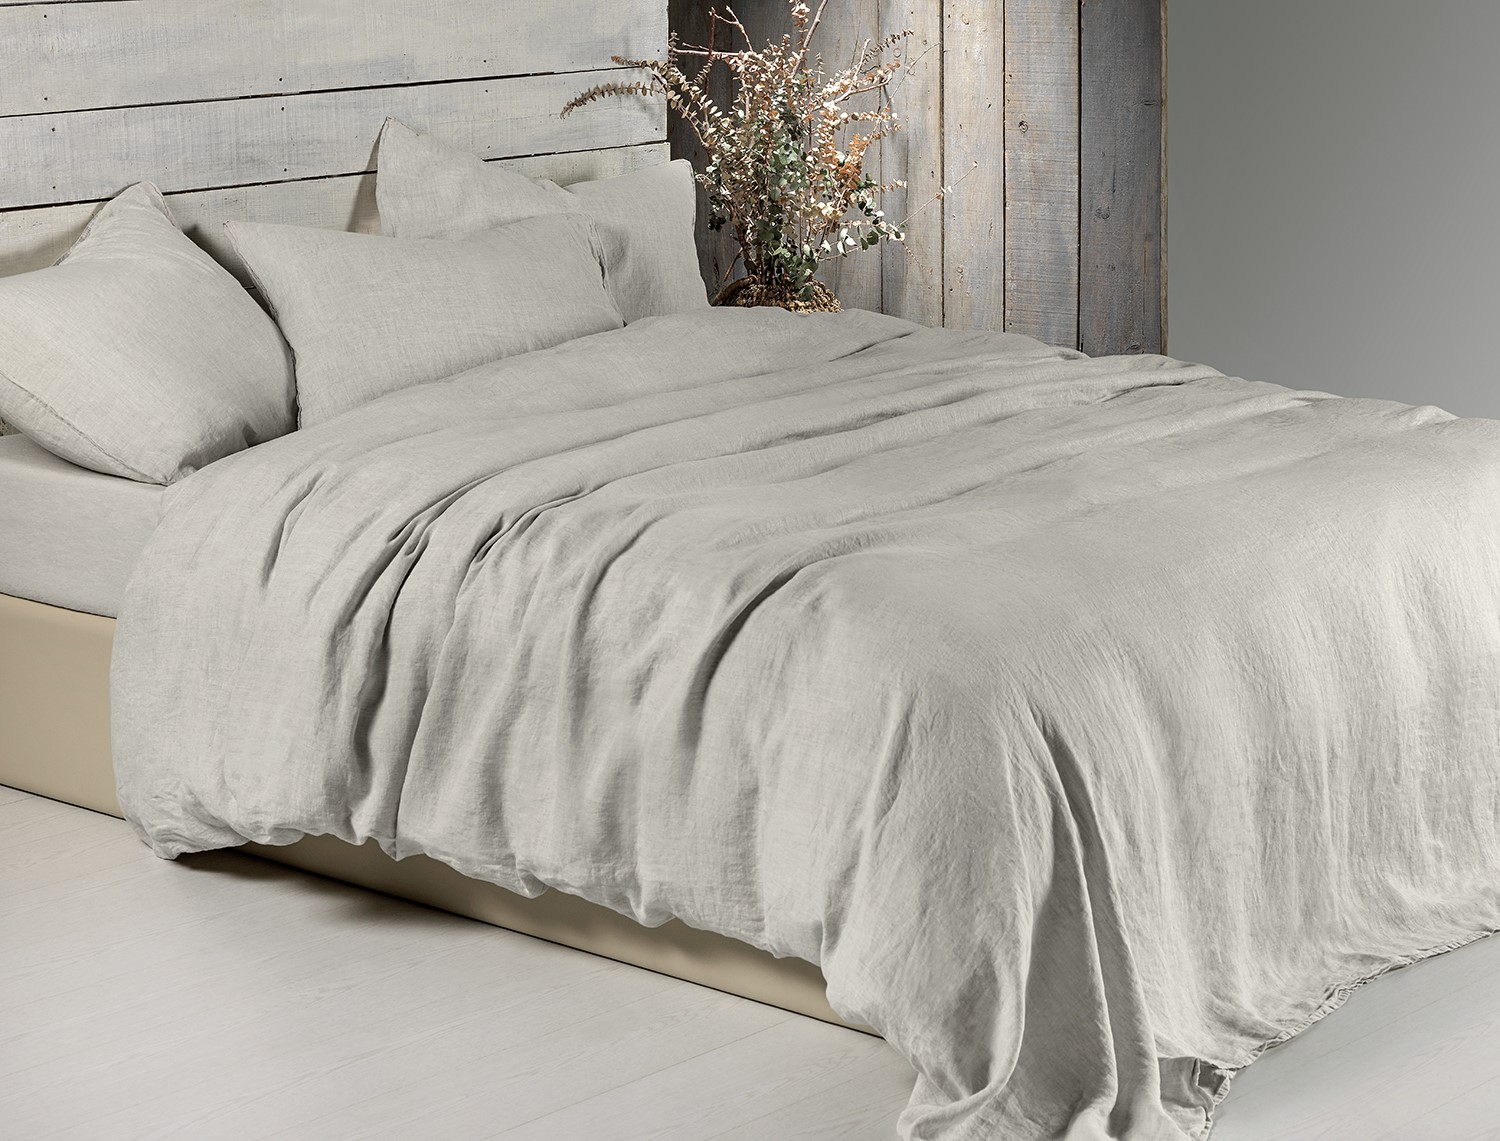 Hoe kies je het perfecte linnen dekbedovertrek voor uw slaapkamer?